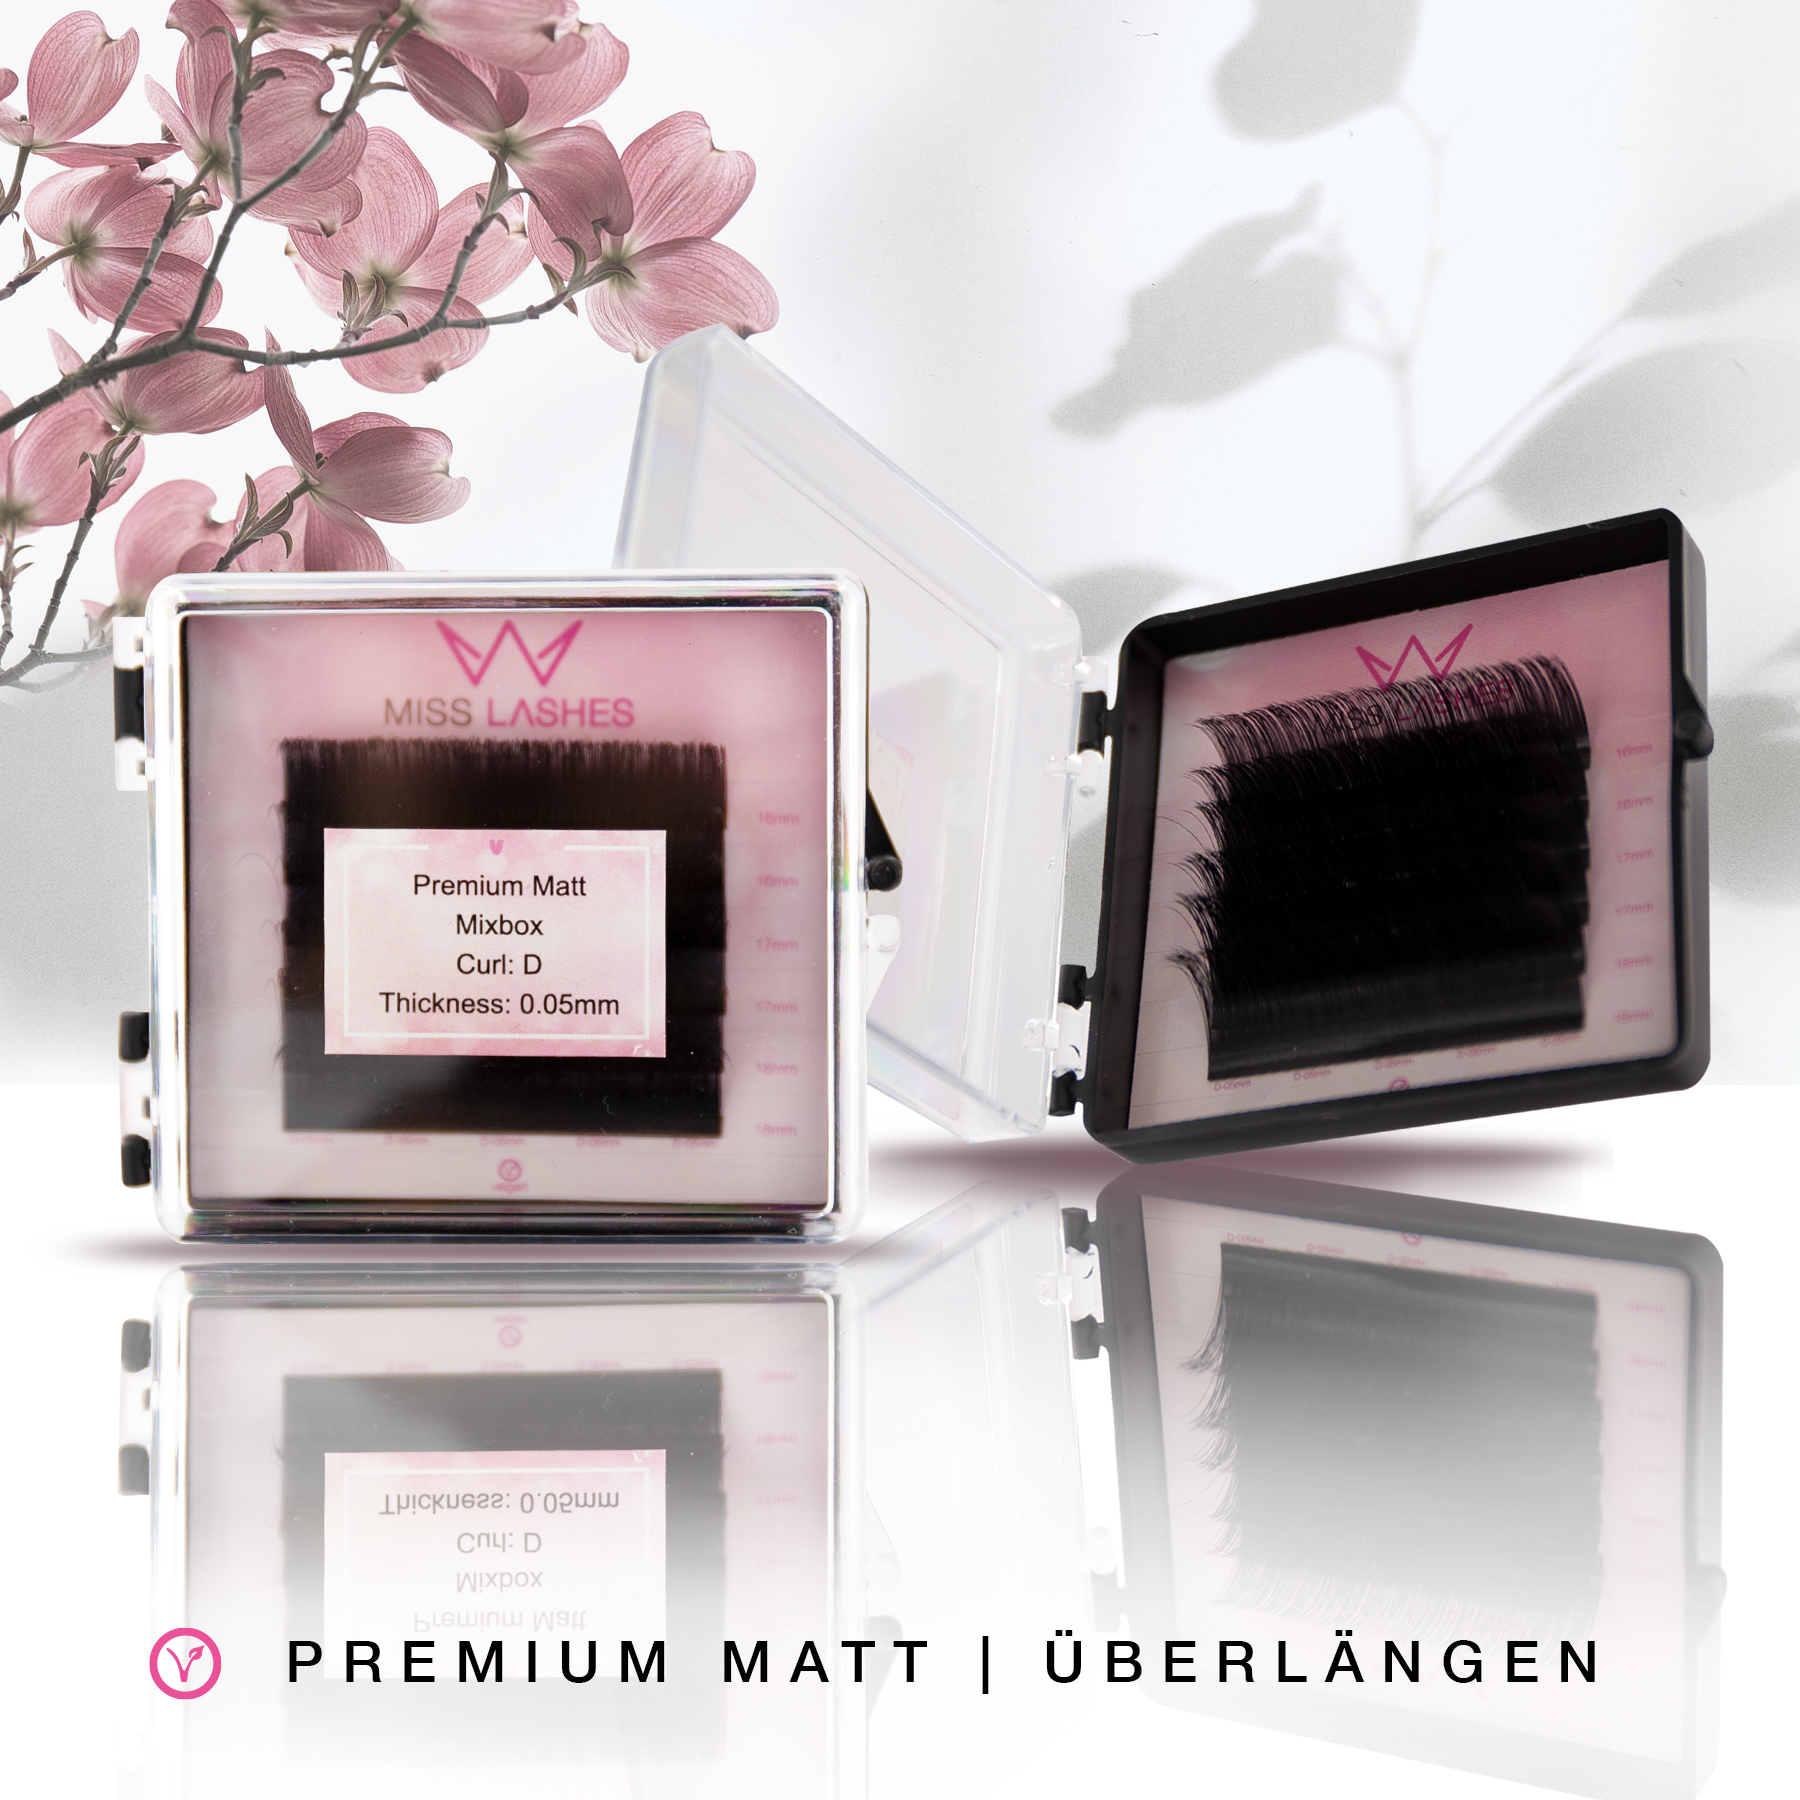 Premium Matt | Volume | Overlength Mixbox